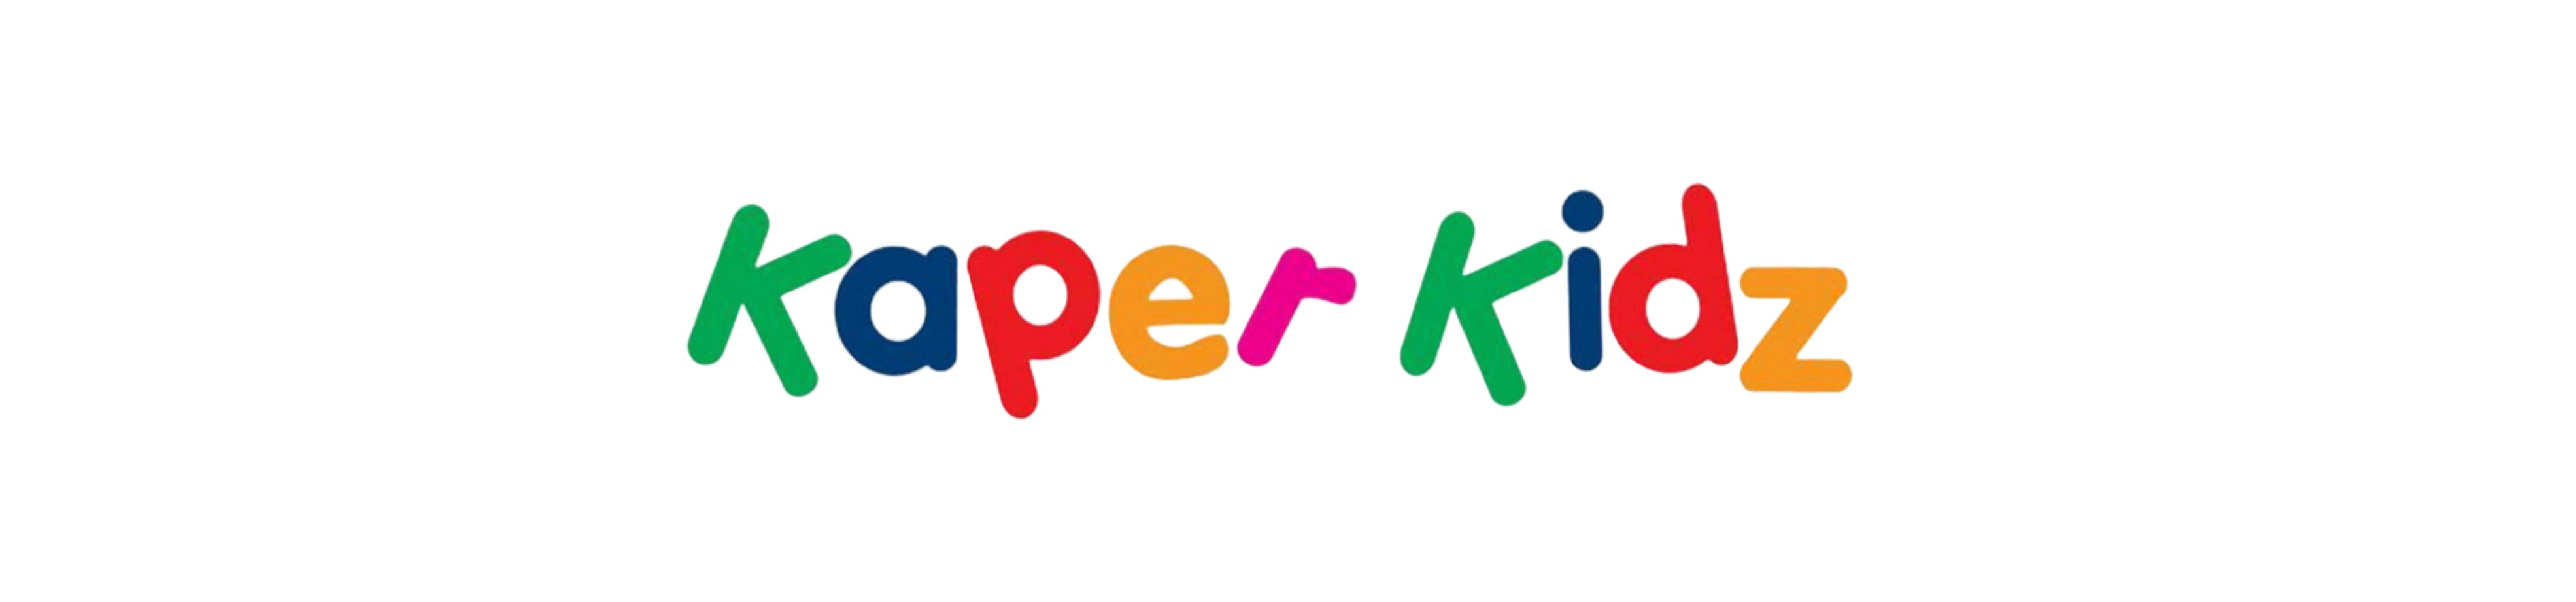 Buy Kaper Kidz Toys Australia Indoor Play Equipment